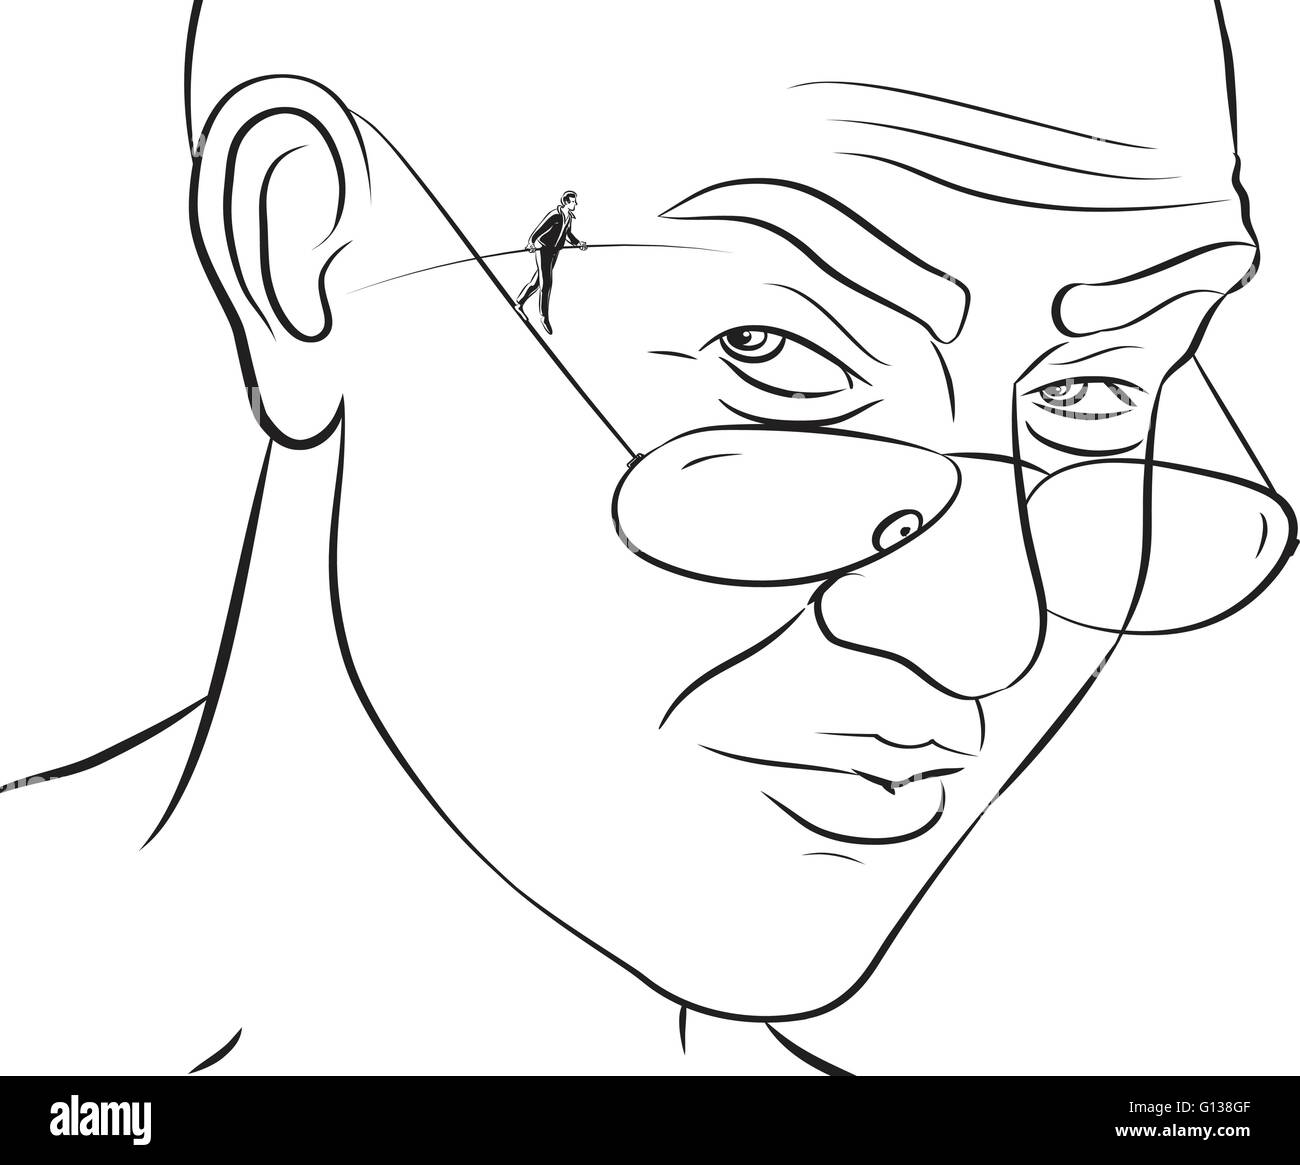 Vektor-Illustration der Seiltänzer auf dem Draht-Arm der Brille als Eigentümer der Gläser schaut ihm verdächtig Stock Vektor